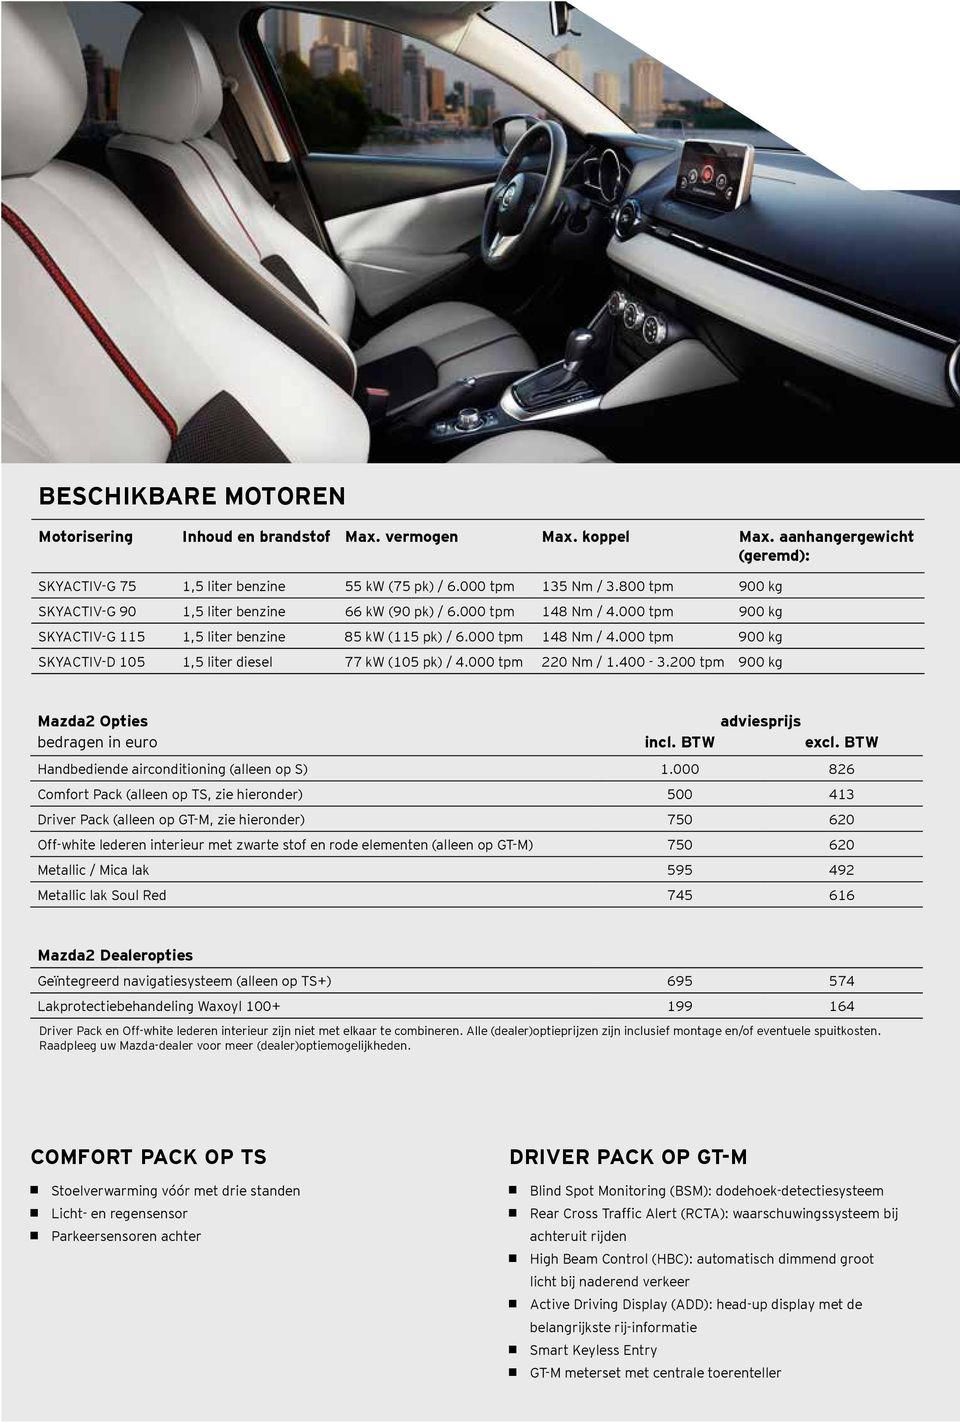 000 tpm 220 Nm / 1.400-3.200 tpm 900 kg Mazda2 Opties adviesprijs bedragen in euro incl. BTW excl. BTW Handbediende airconditioning (alleen op S) 1.